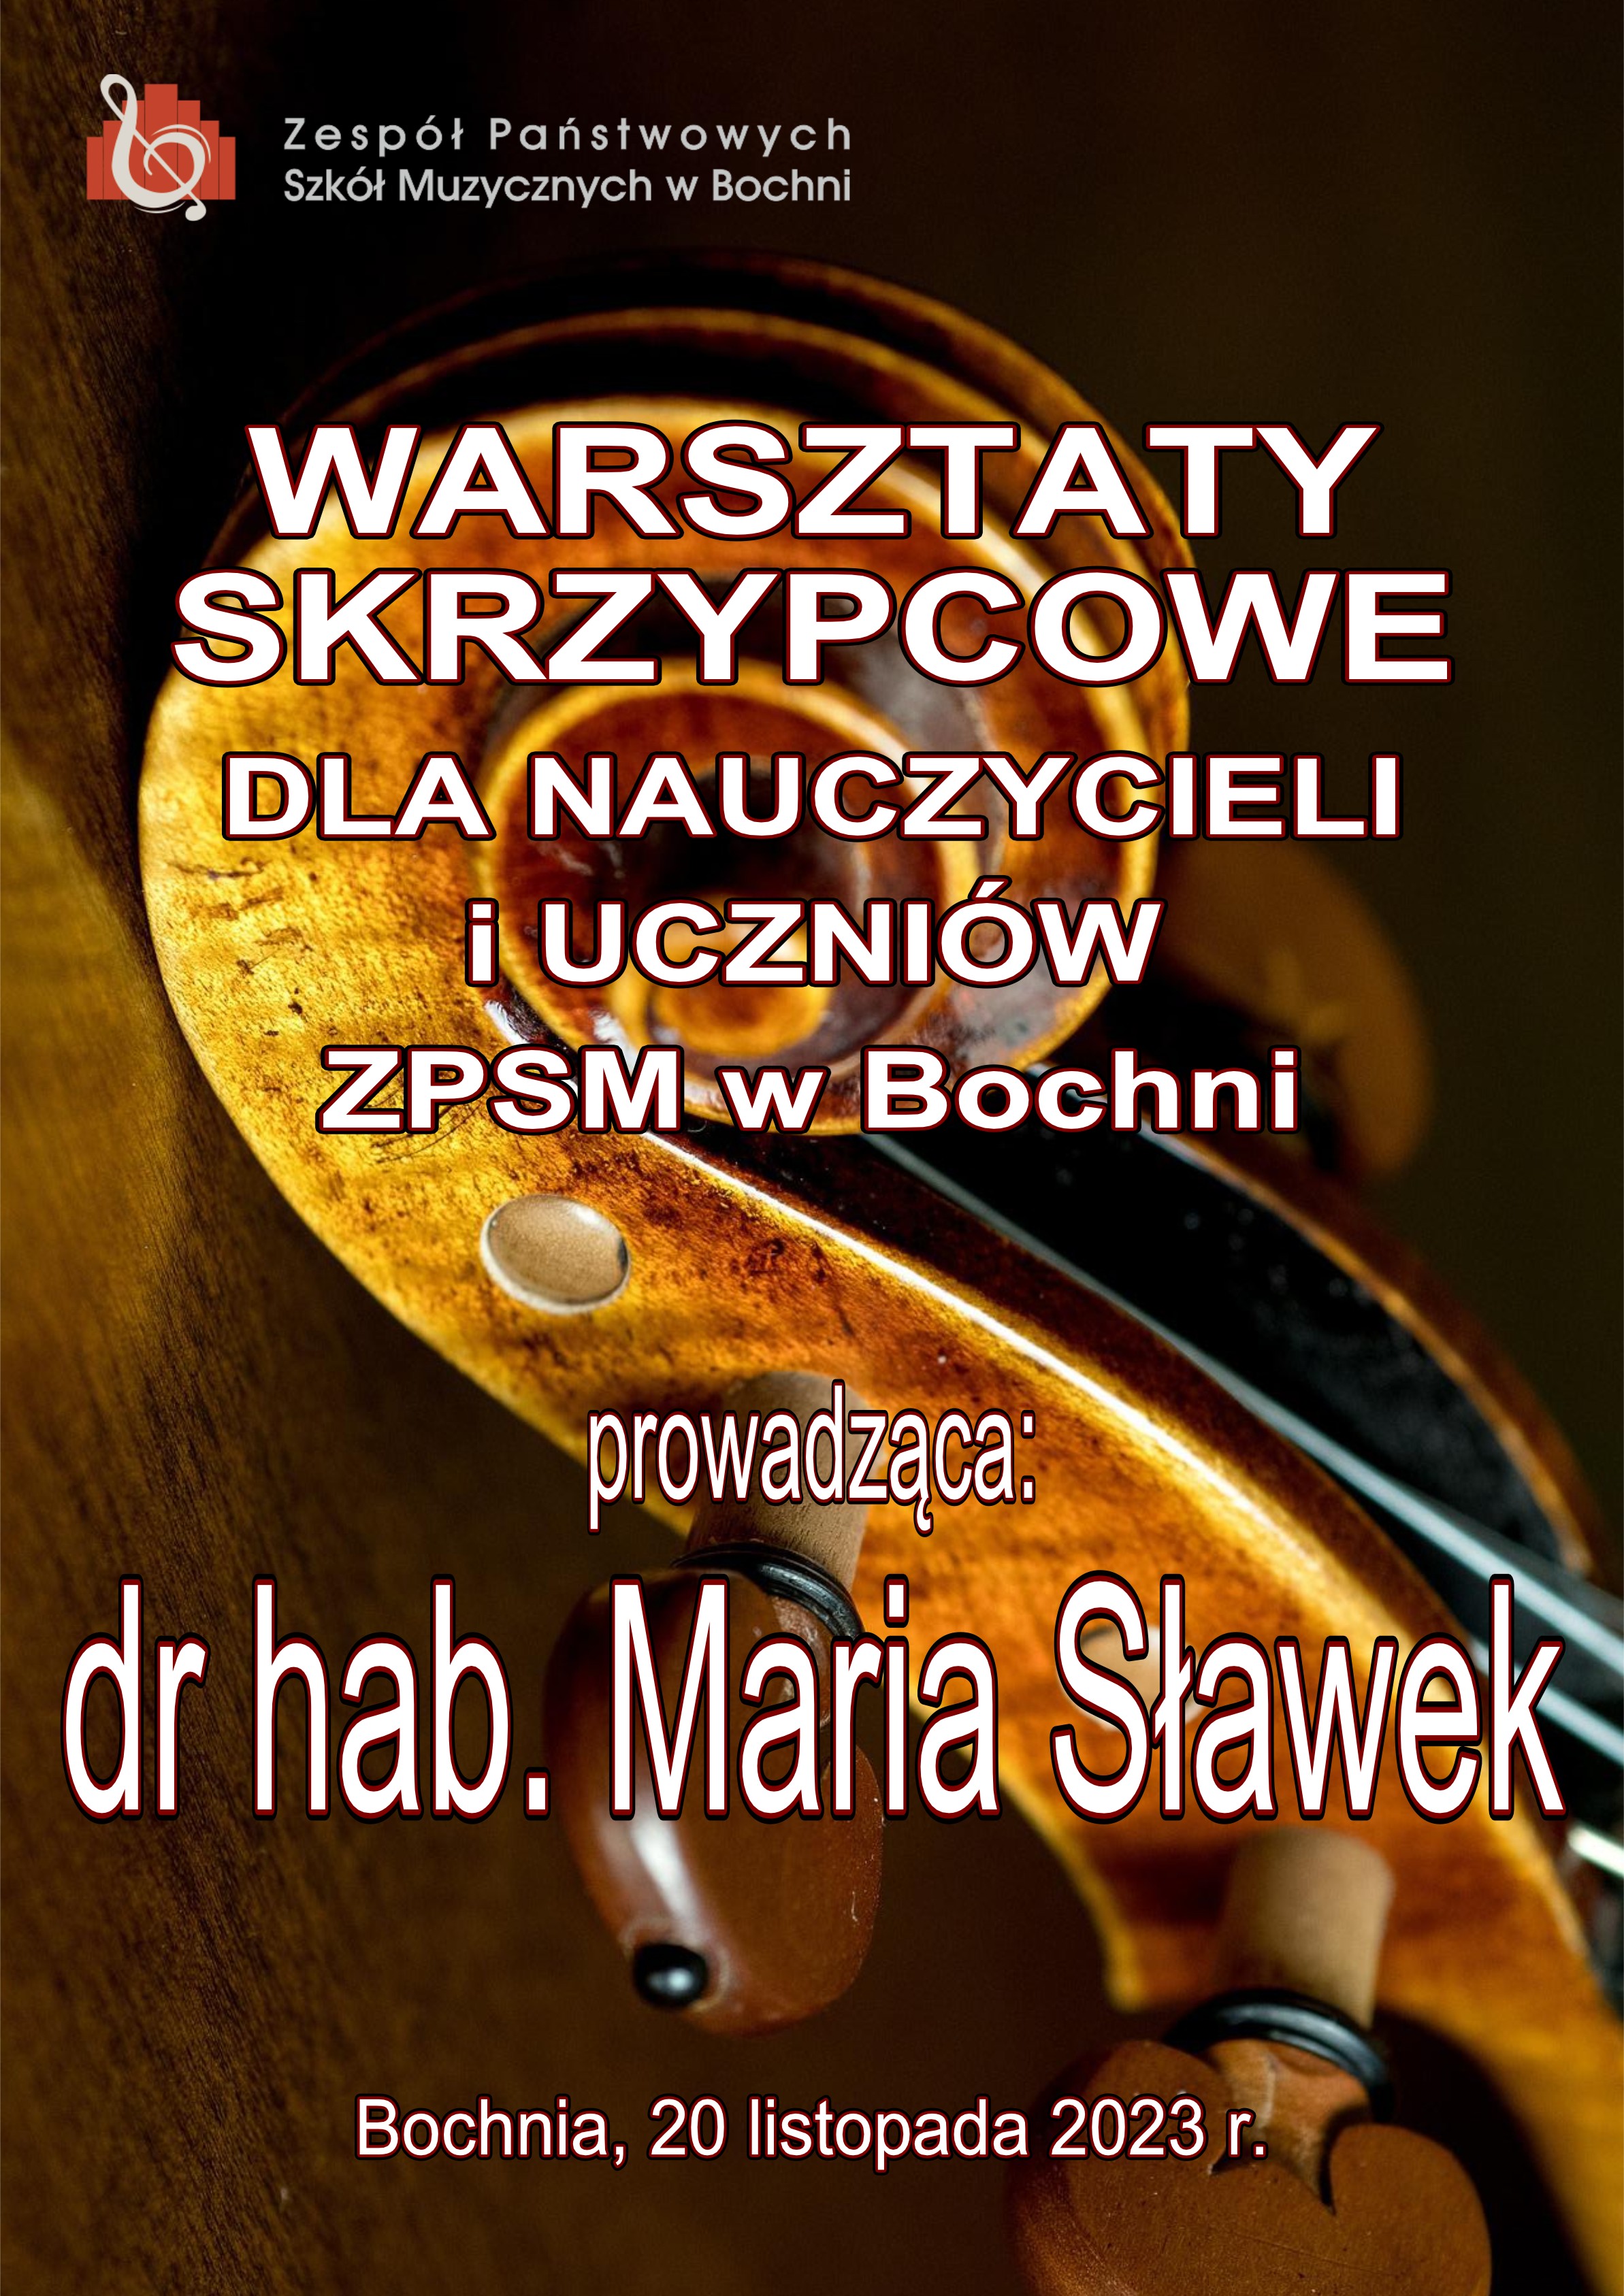 Warsztaty skrzypcowe z panią dr hab. Marią Sławek - 20.11.2023 r.